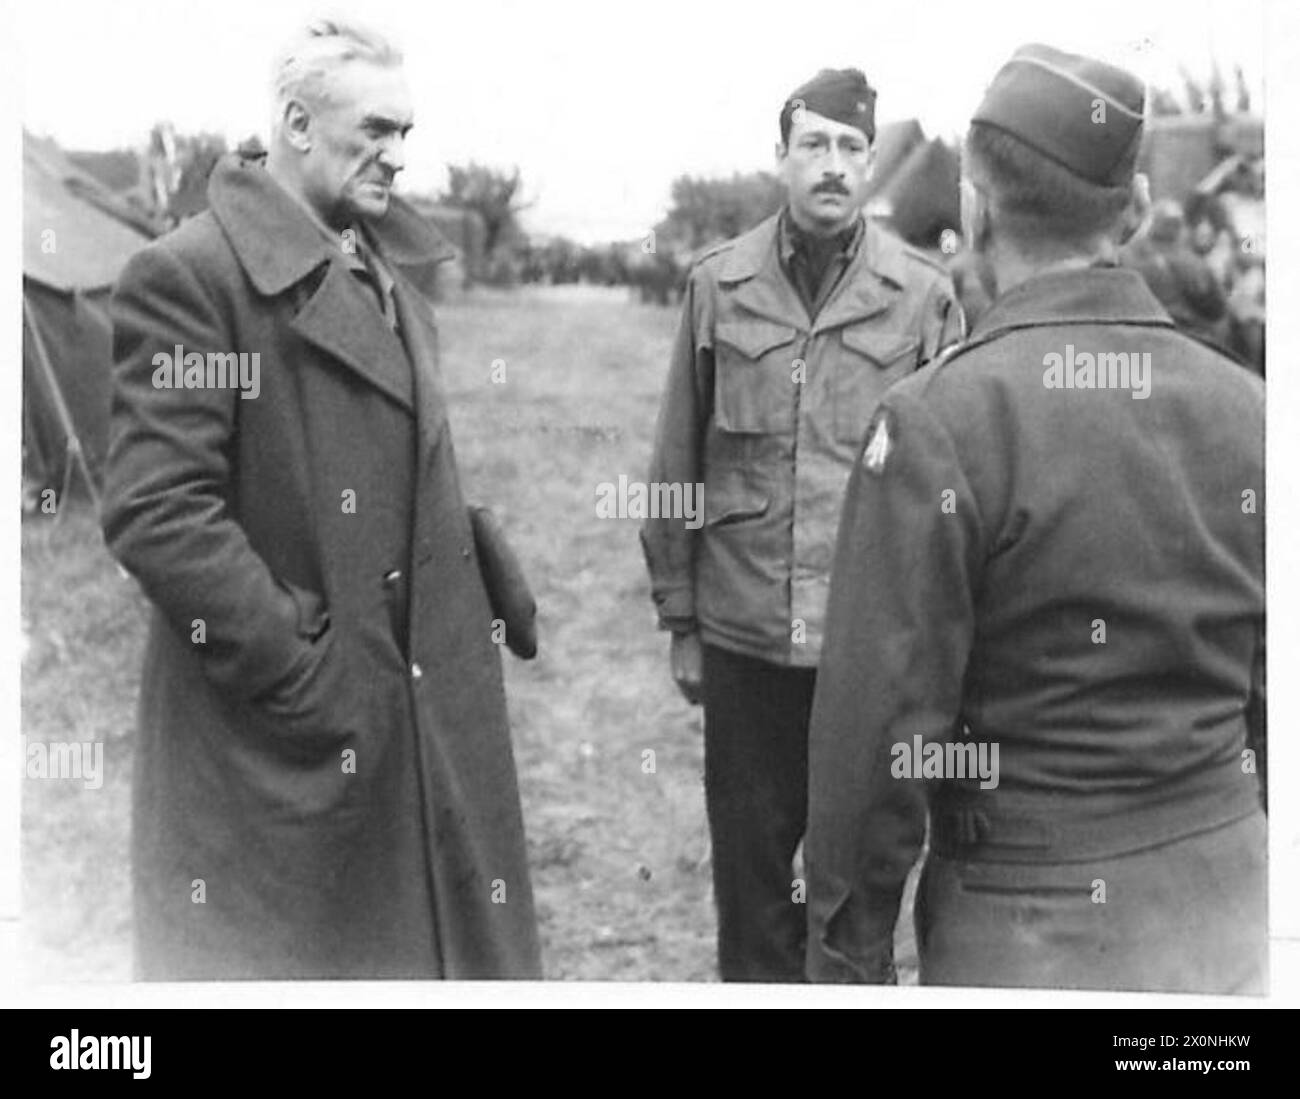 MARSCHALL GRAZIANI GEFANGEN GENOMMEN – Marschall Graziani, Kommandeur der ligurischen Armee, fotografiert bei der 5. Armee H.Q., wo er von Brigadegeneral Howard verhört wurde. Fotografisches negativ, britische Armee Stockfoto